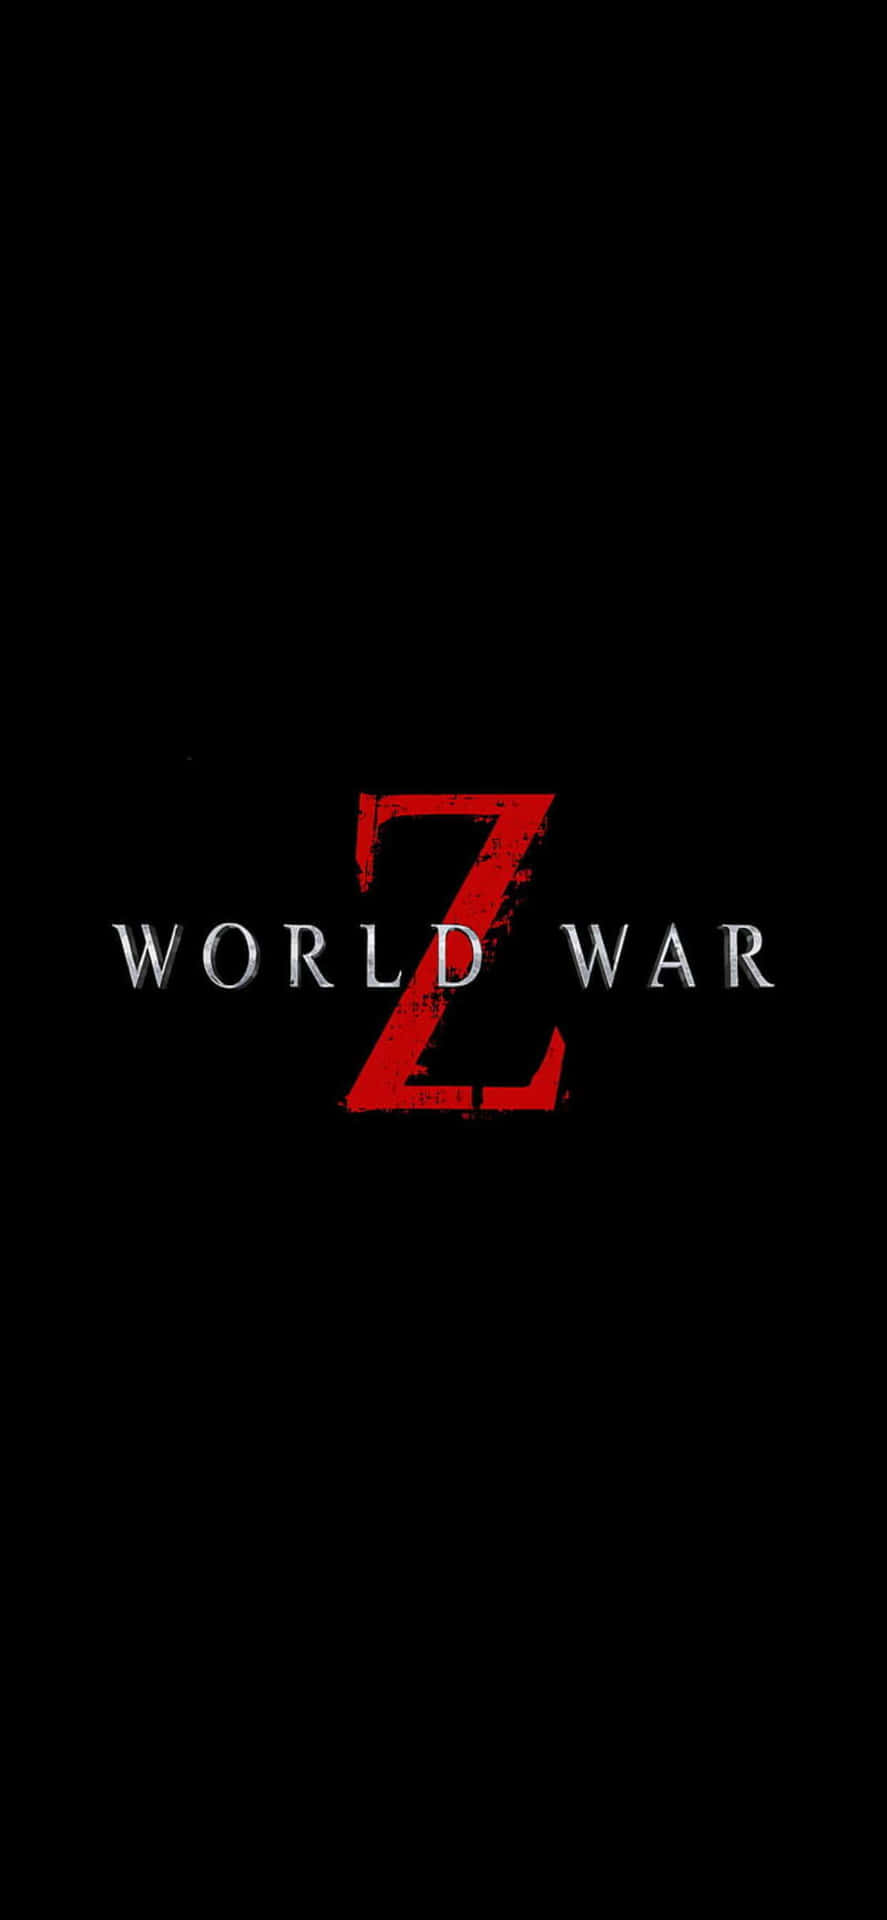 Movie Title iPhone XS Max World War Z Background